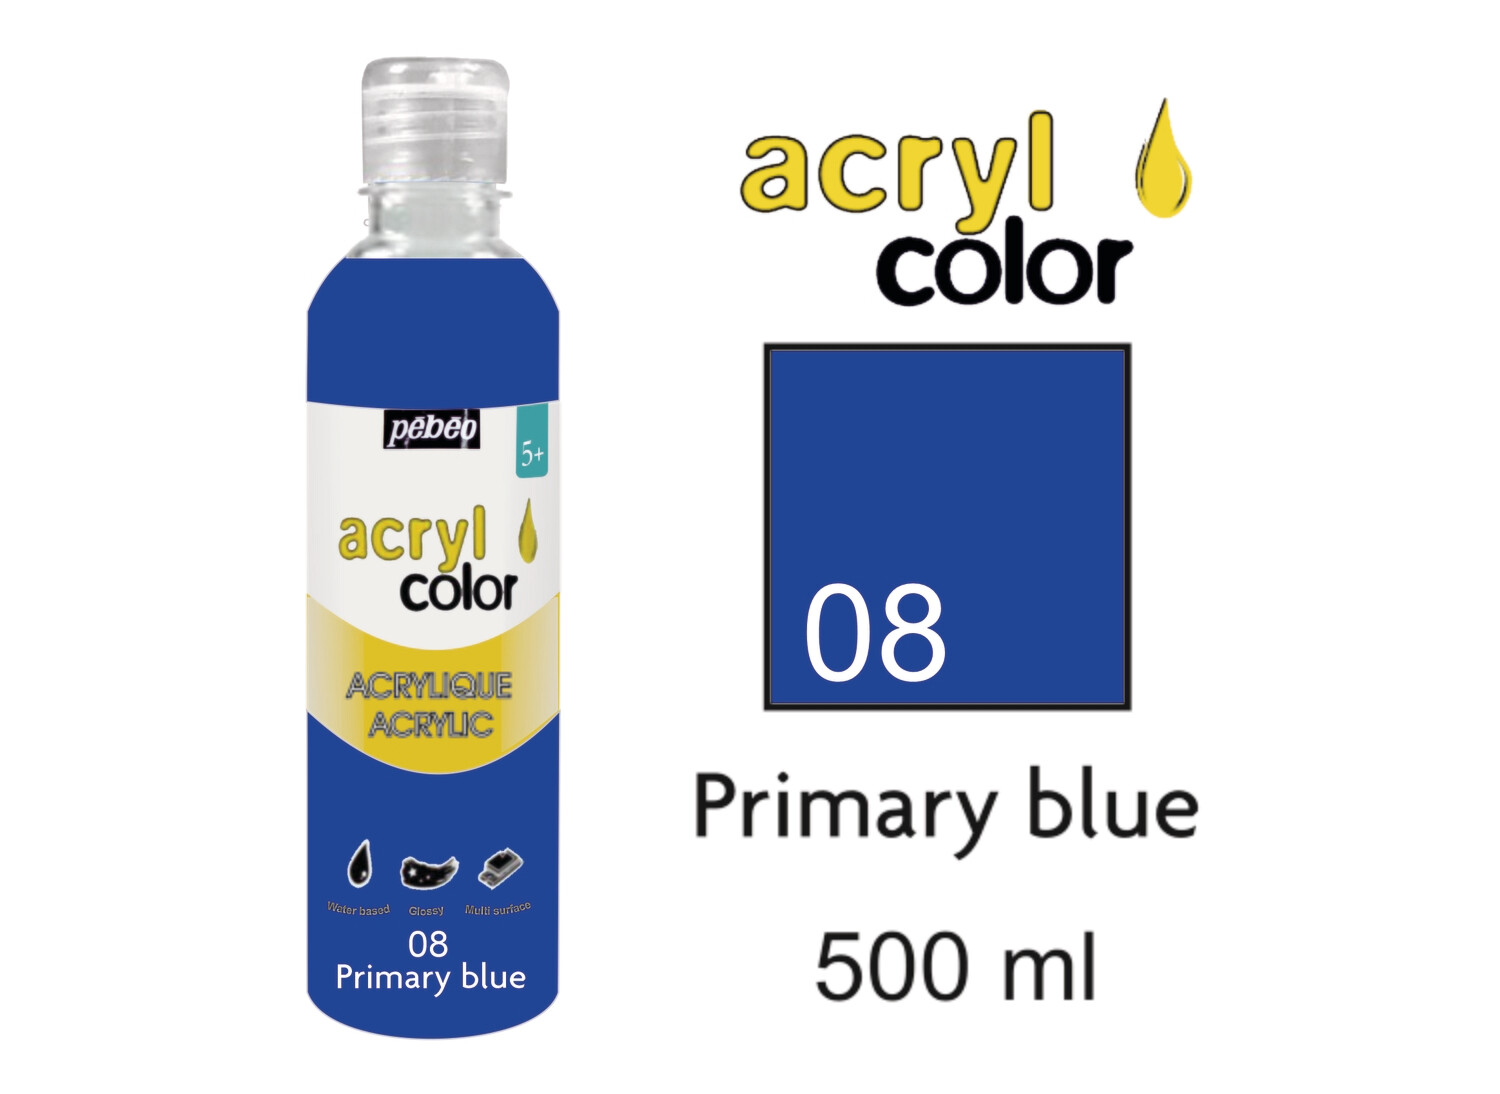 Acrylcolor Liquid Acrylic 500 ml, Primary Blue,  No. 08